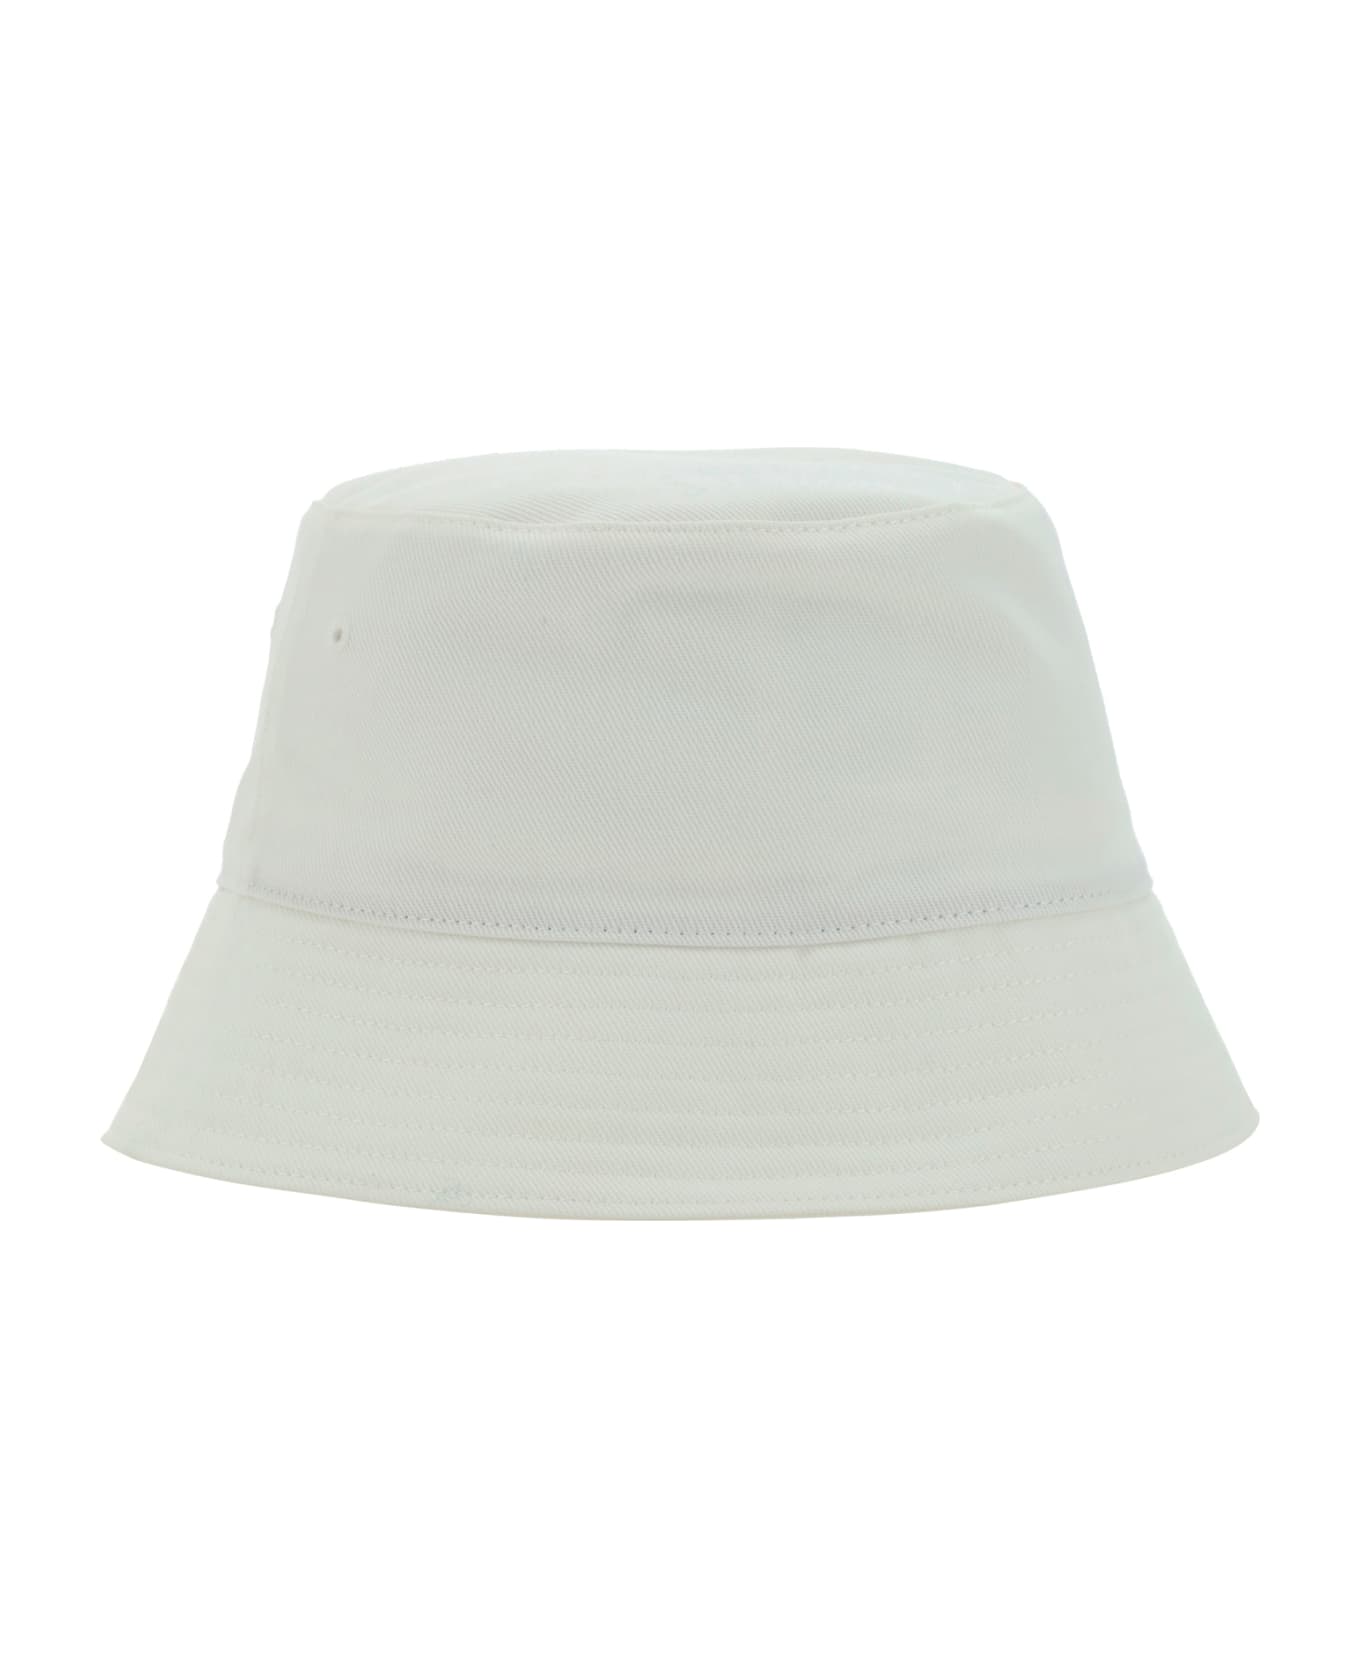 Alexander McQueen Logo Bucket Hat - White/black 帽子